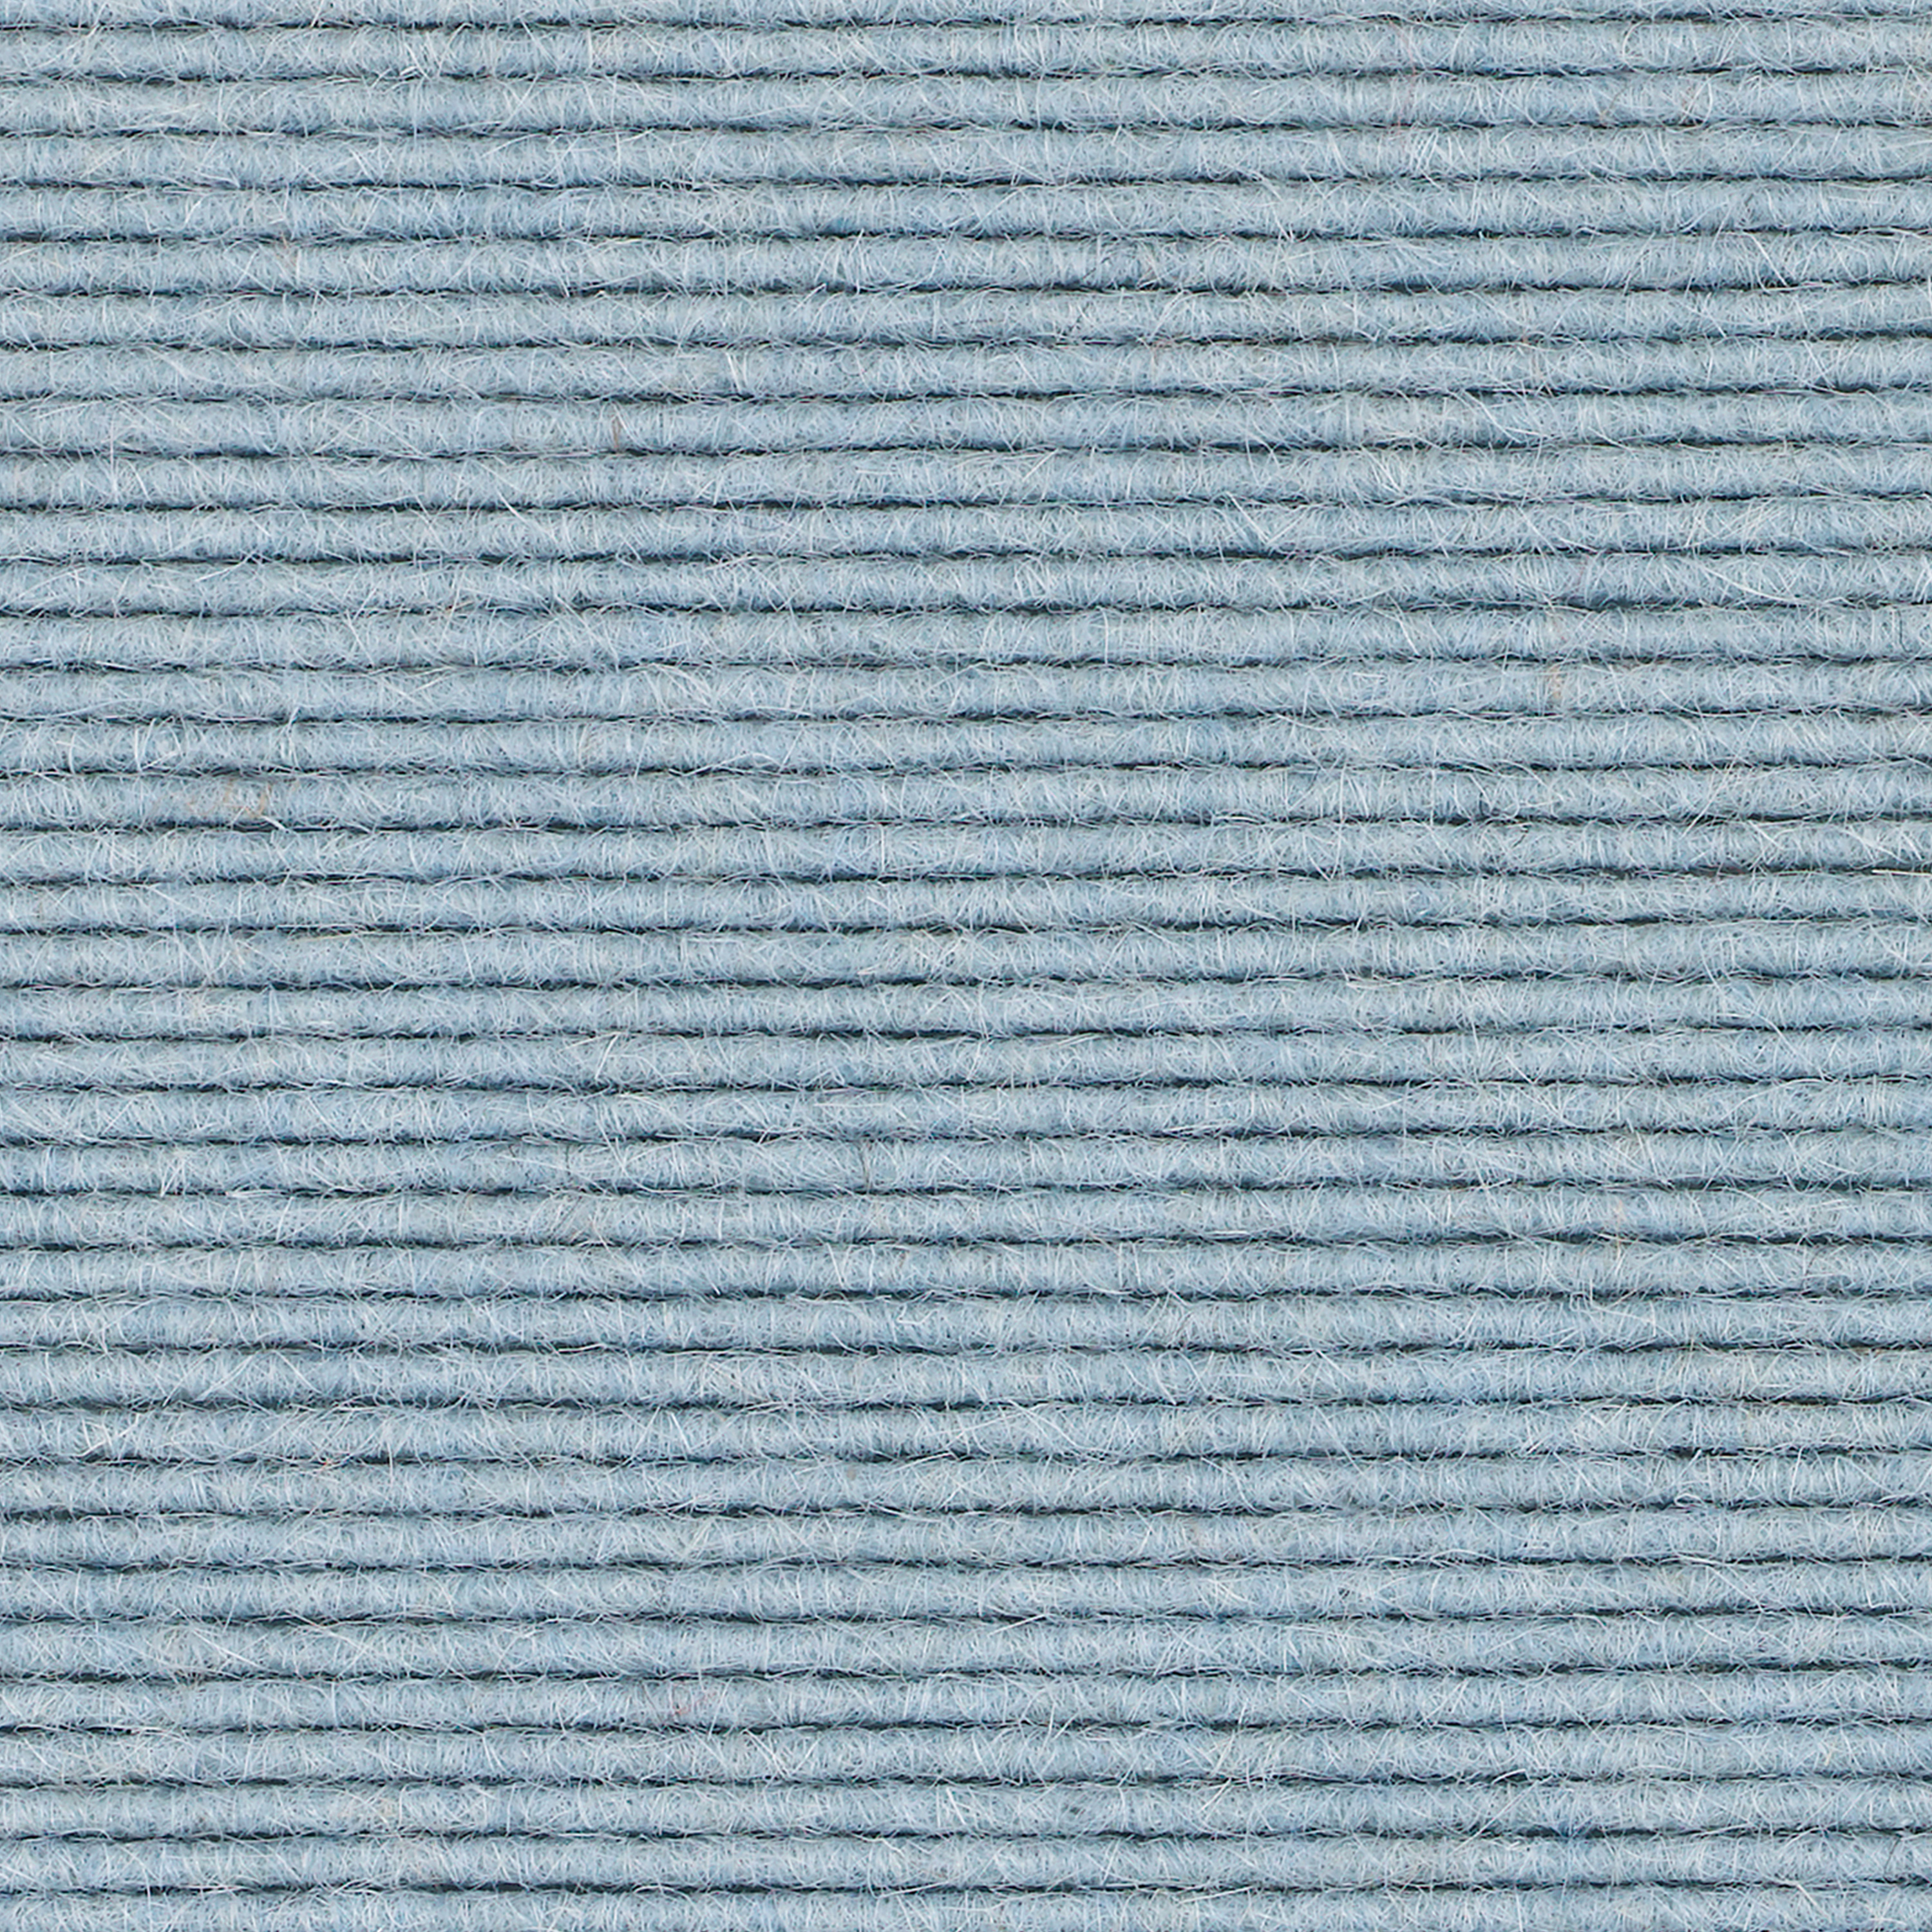 tretford-Teppich 'Arktis (641)', 3 x 2 m, ungekettelt